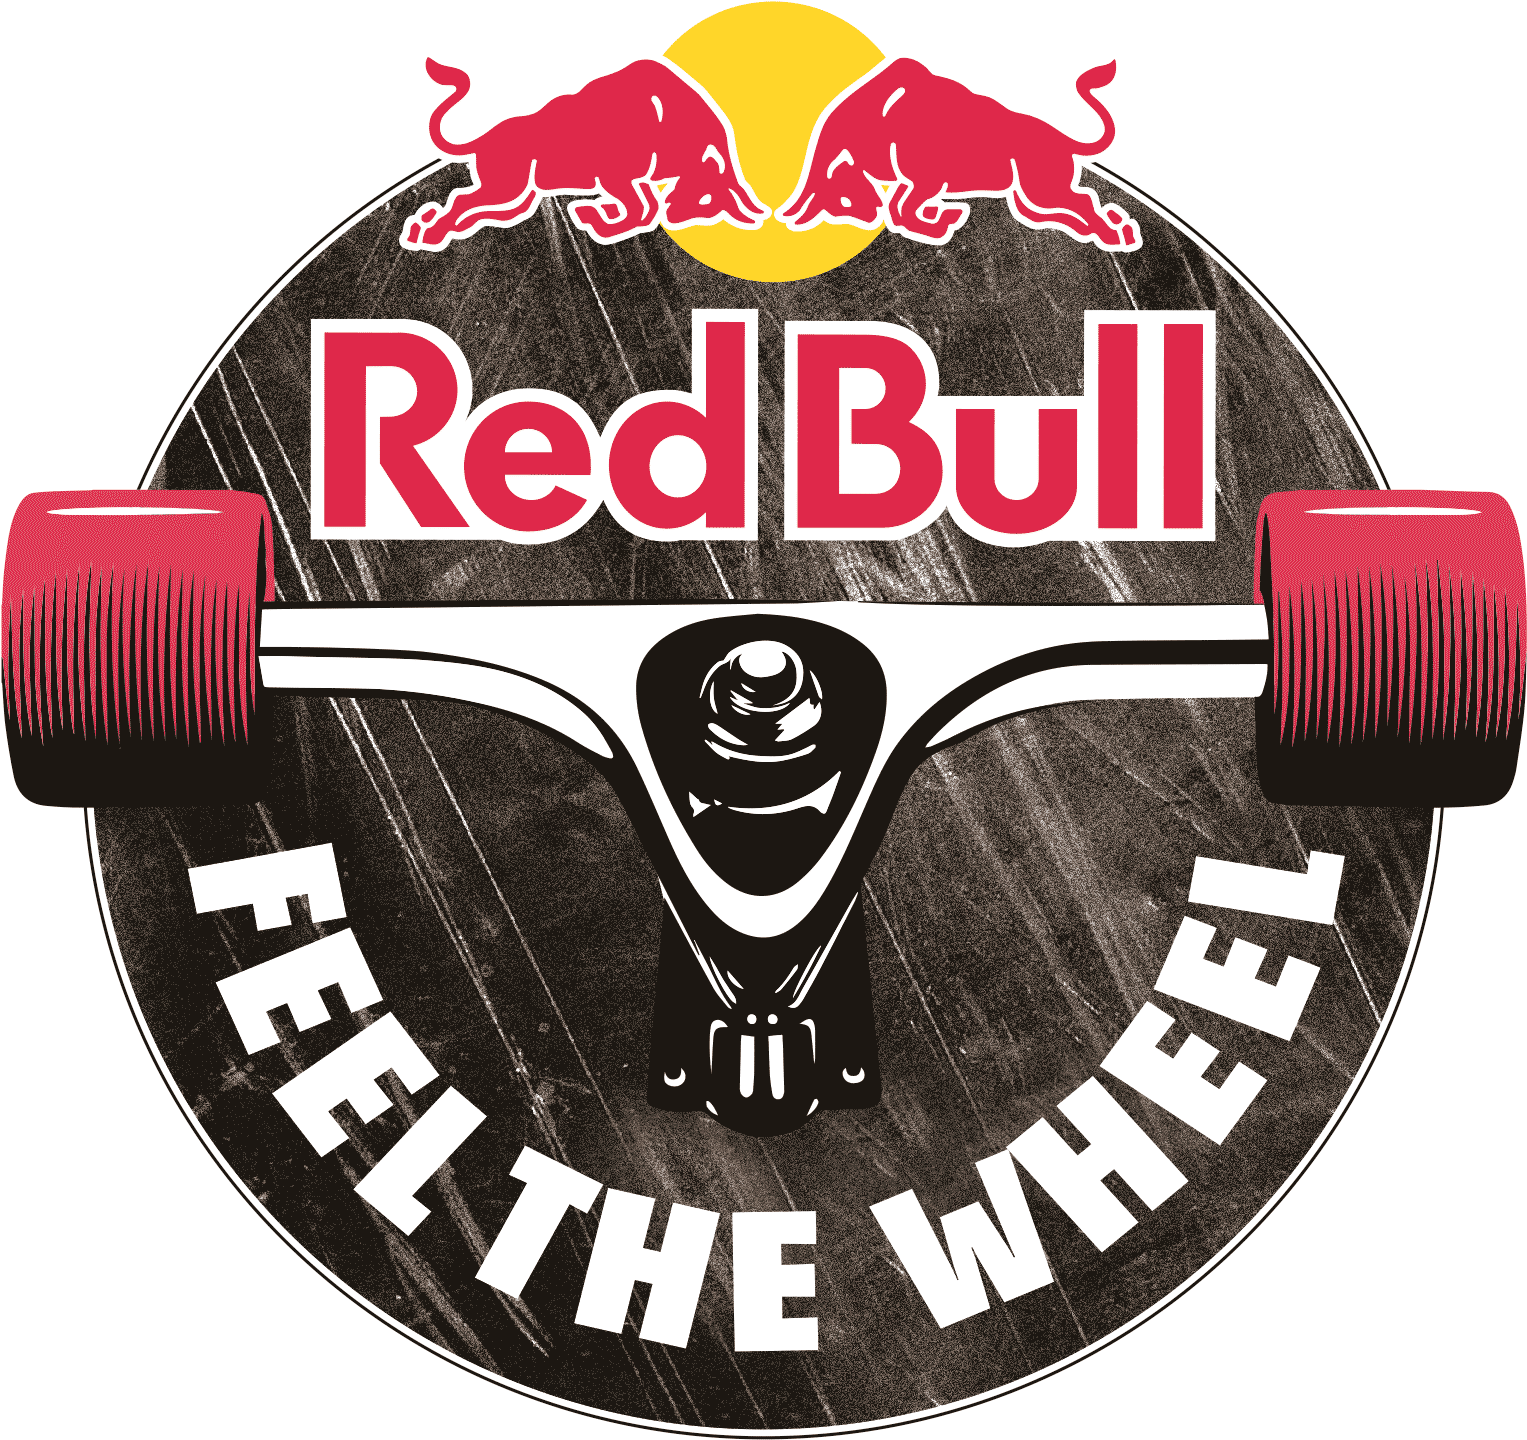 Red Bull Feel The Wheel - Red Bull Feel The Wheel Logo (1673x1635), Png Download